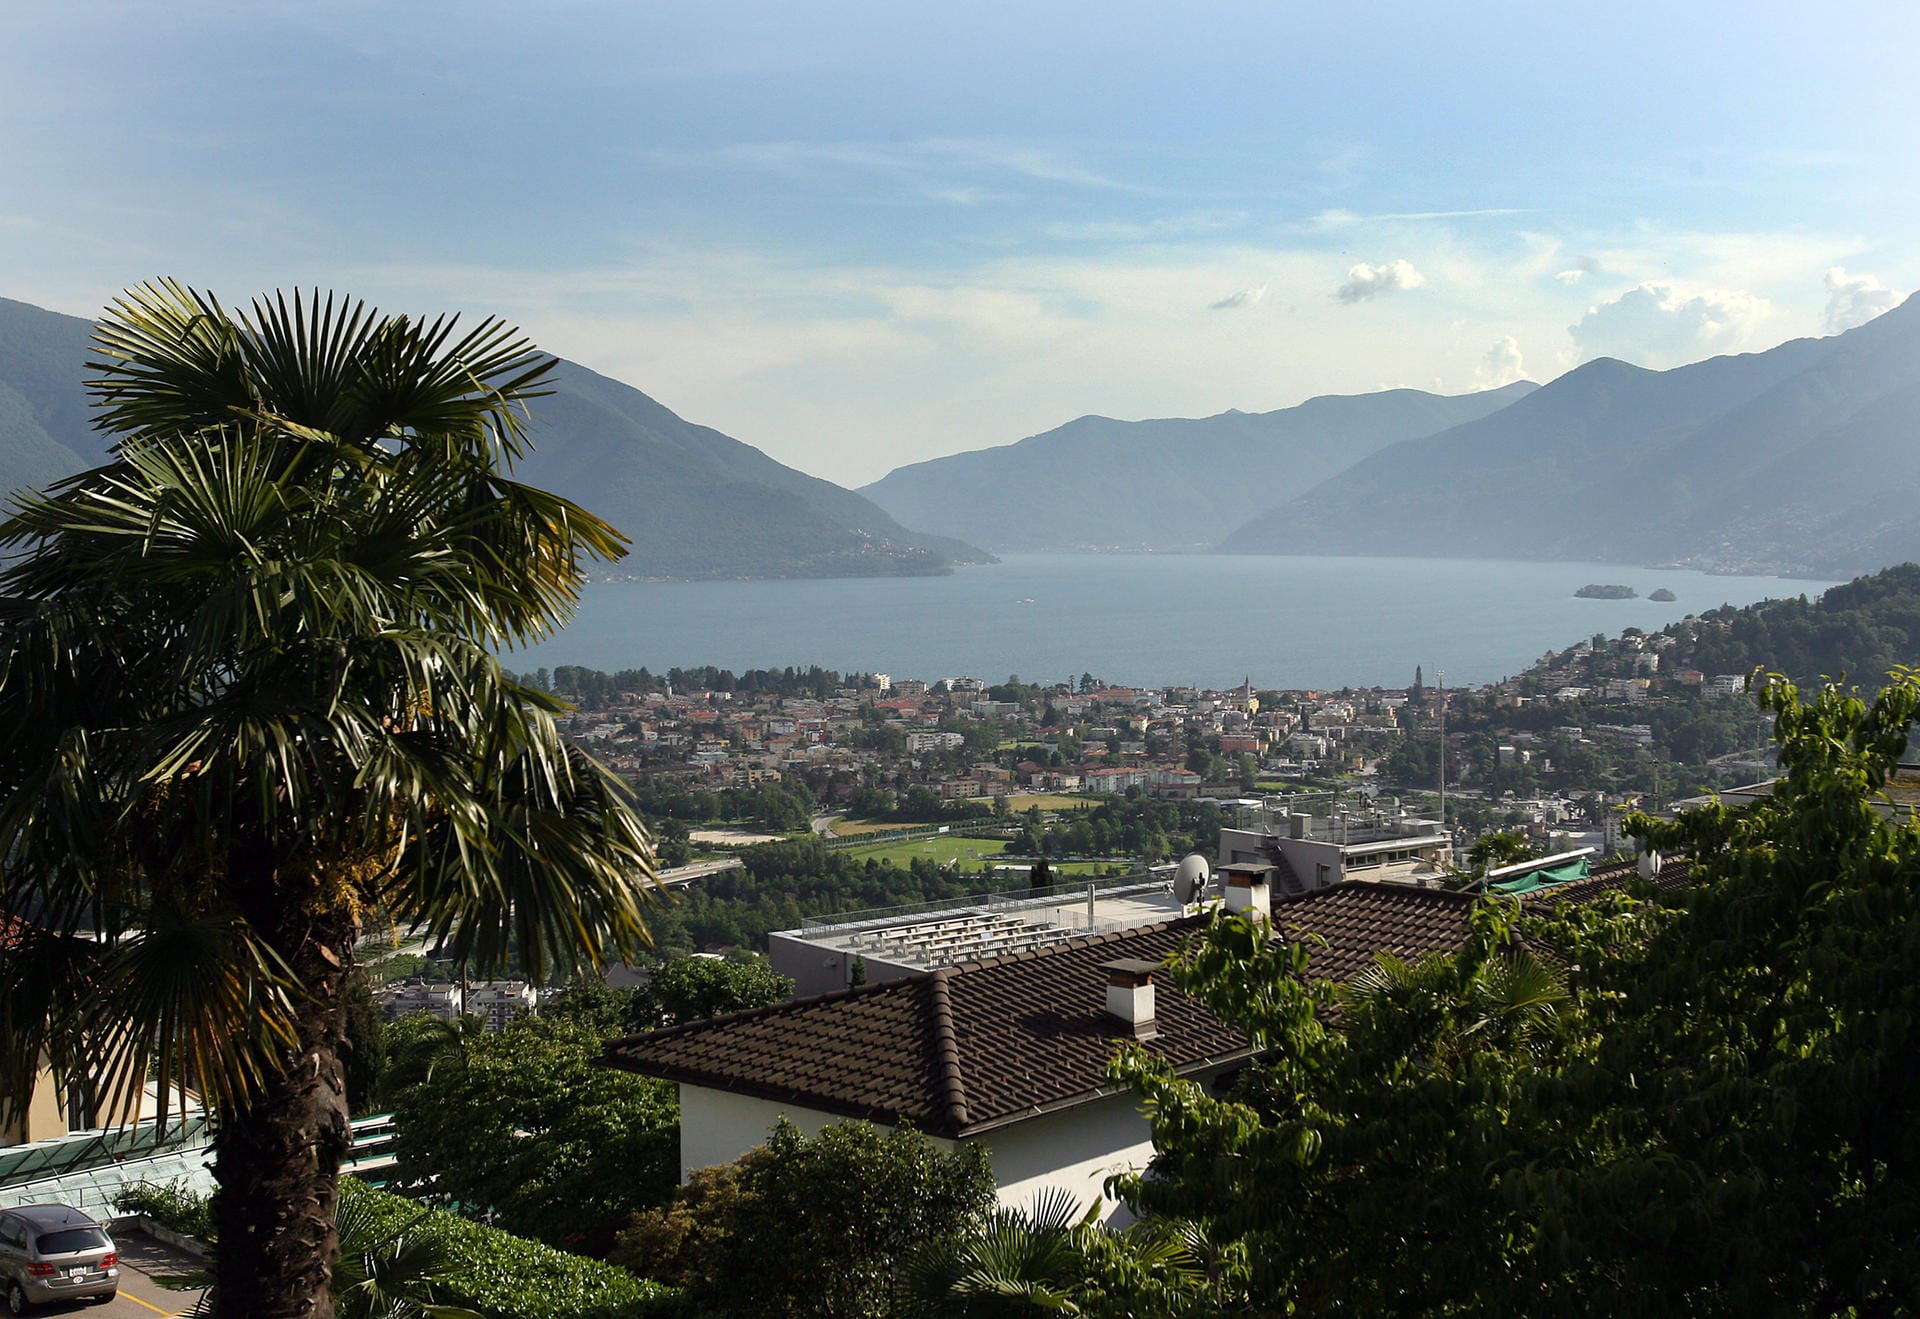 Dies ist der Blick auf den See bei Ascona.